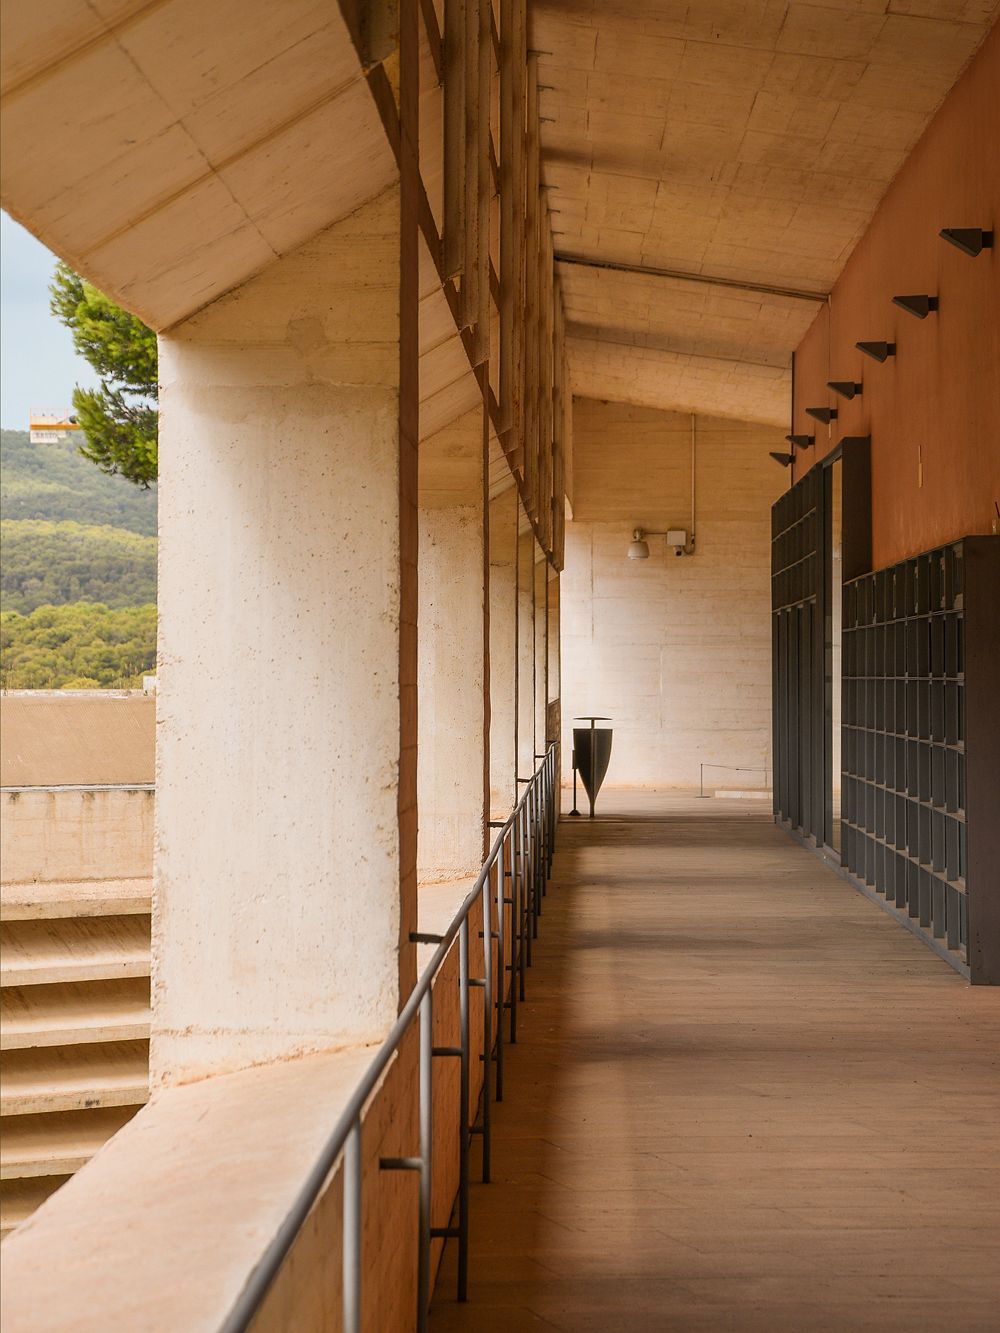 Moneo building, Fundació Miró Mallorca